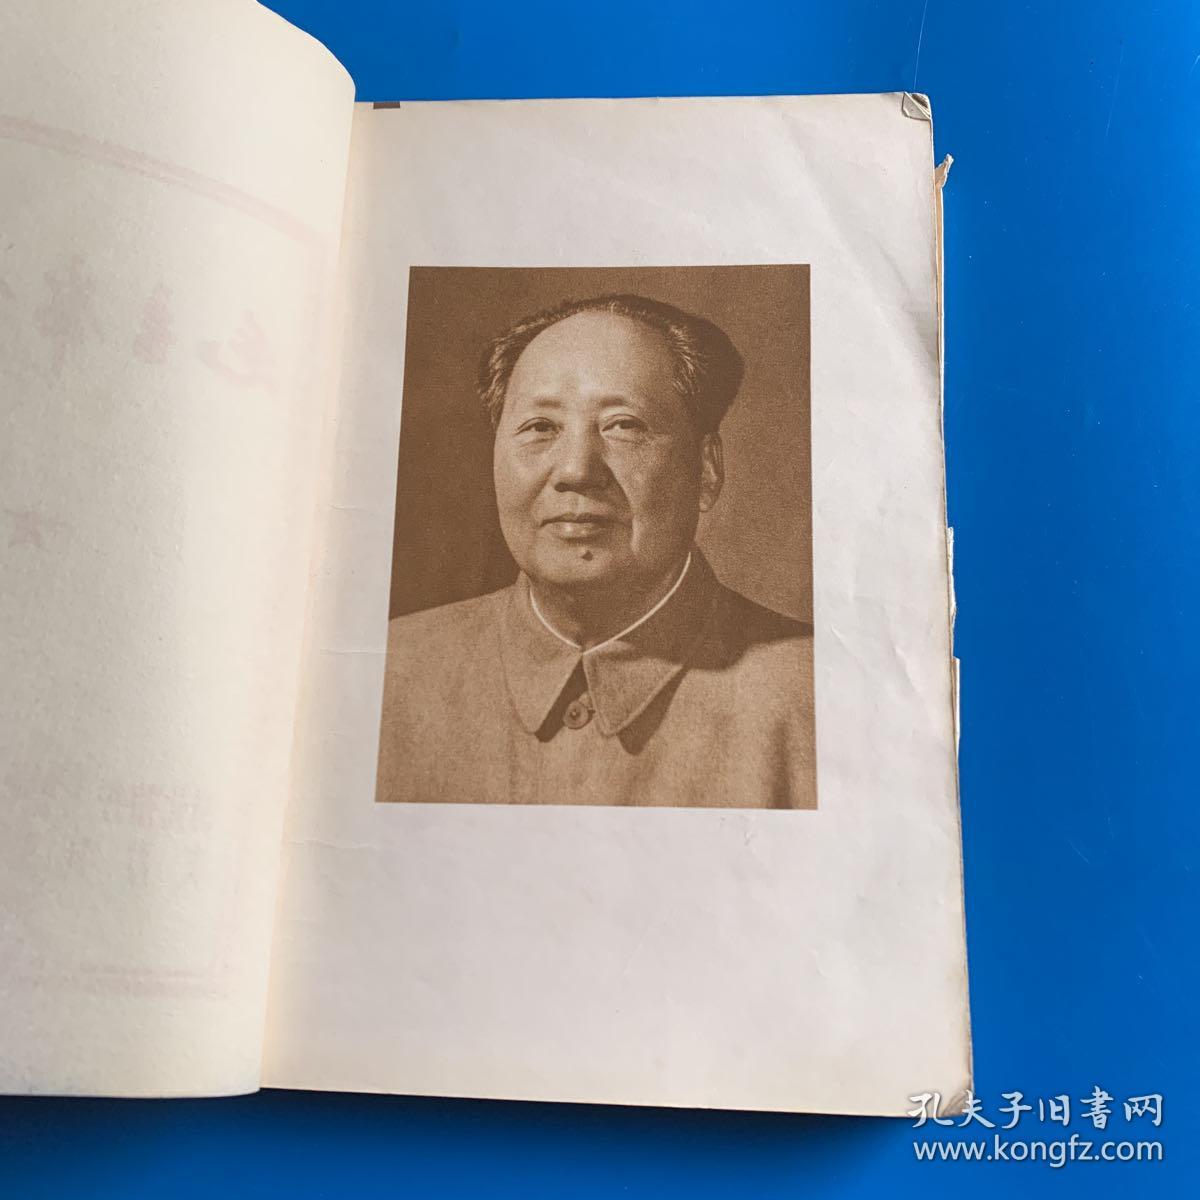 毛主席诗词 1967版 有林彪题词和勘误表 书皮包裹